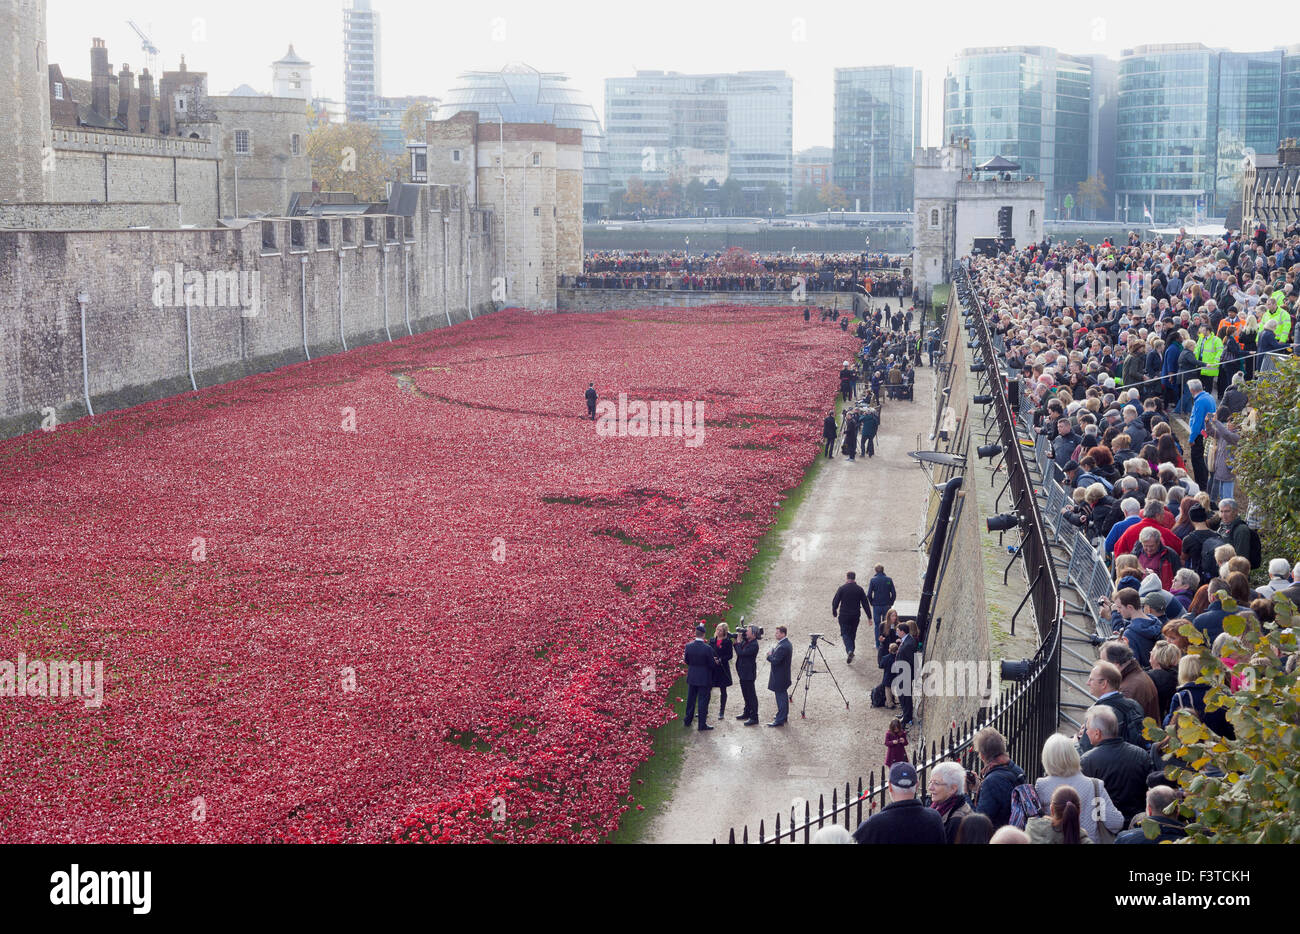 Erinnerung feiern 2014. "Blut sieht und Land der roten gefegt", eine Kunstinstallation von Paul Cummins in den Tower of London. Stockfoto